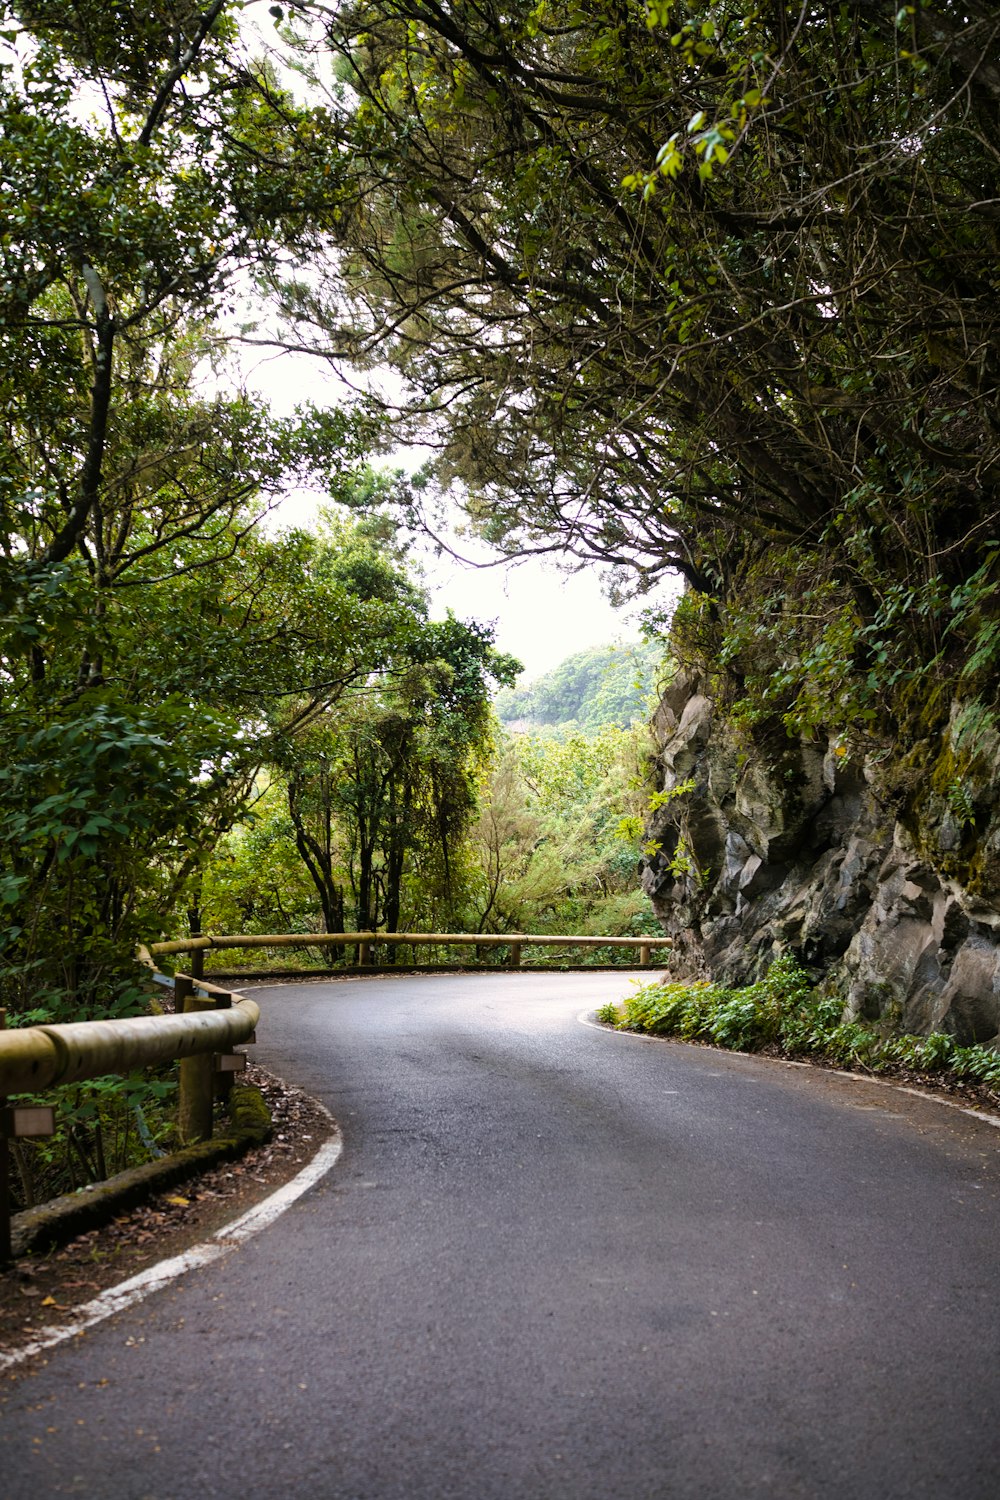 Una strada tortuosa circondata da alberi verdi lussureggianti